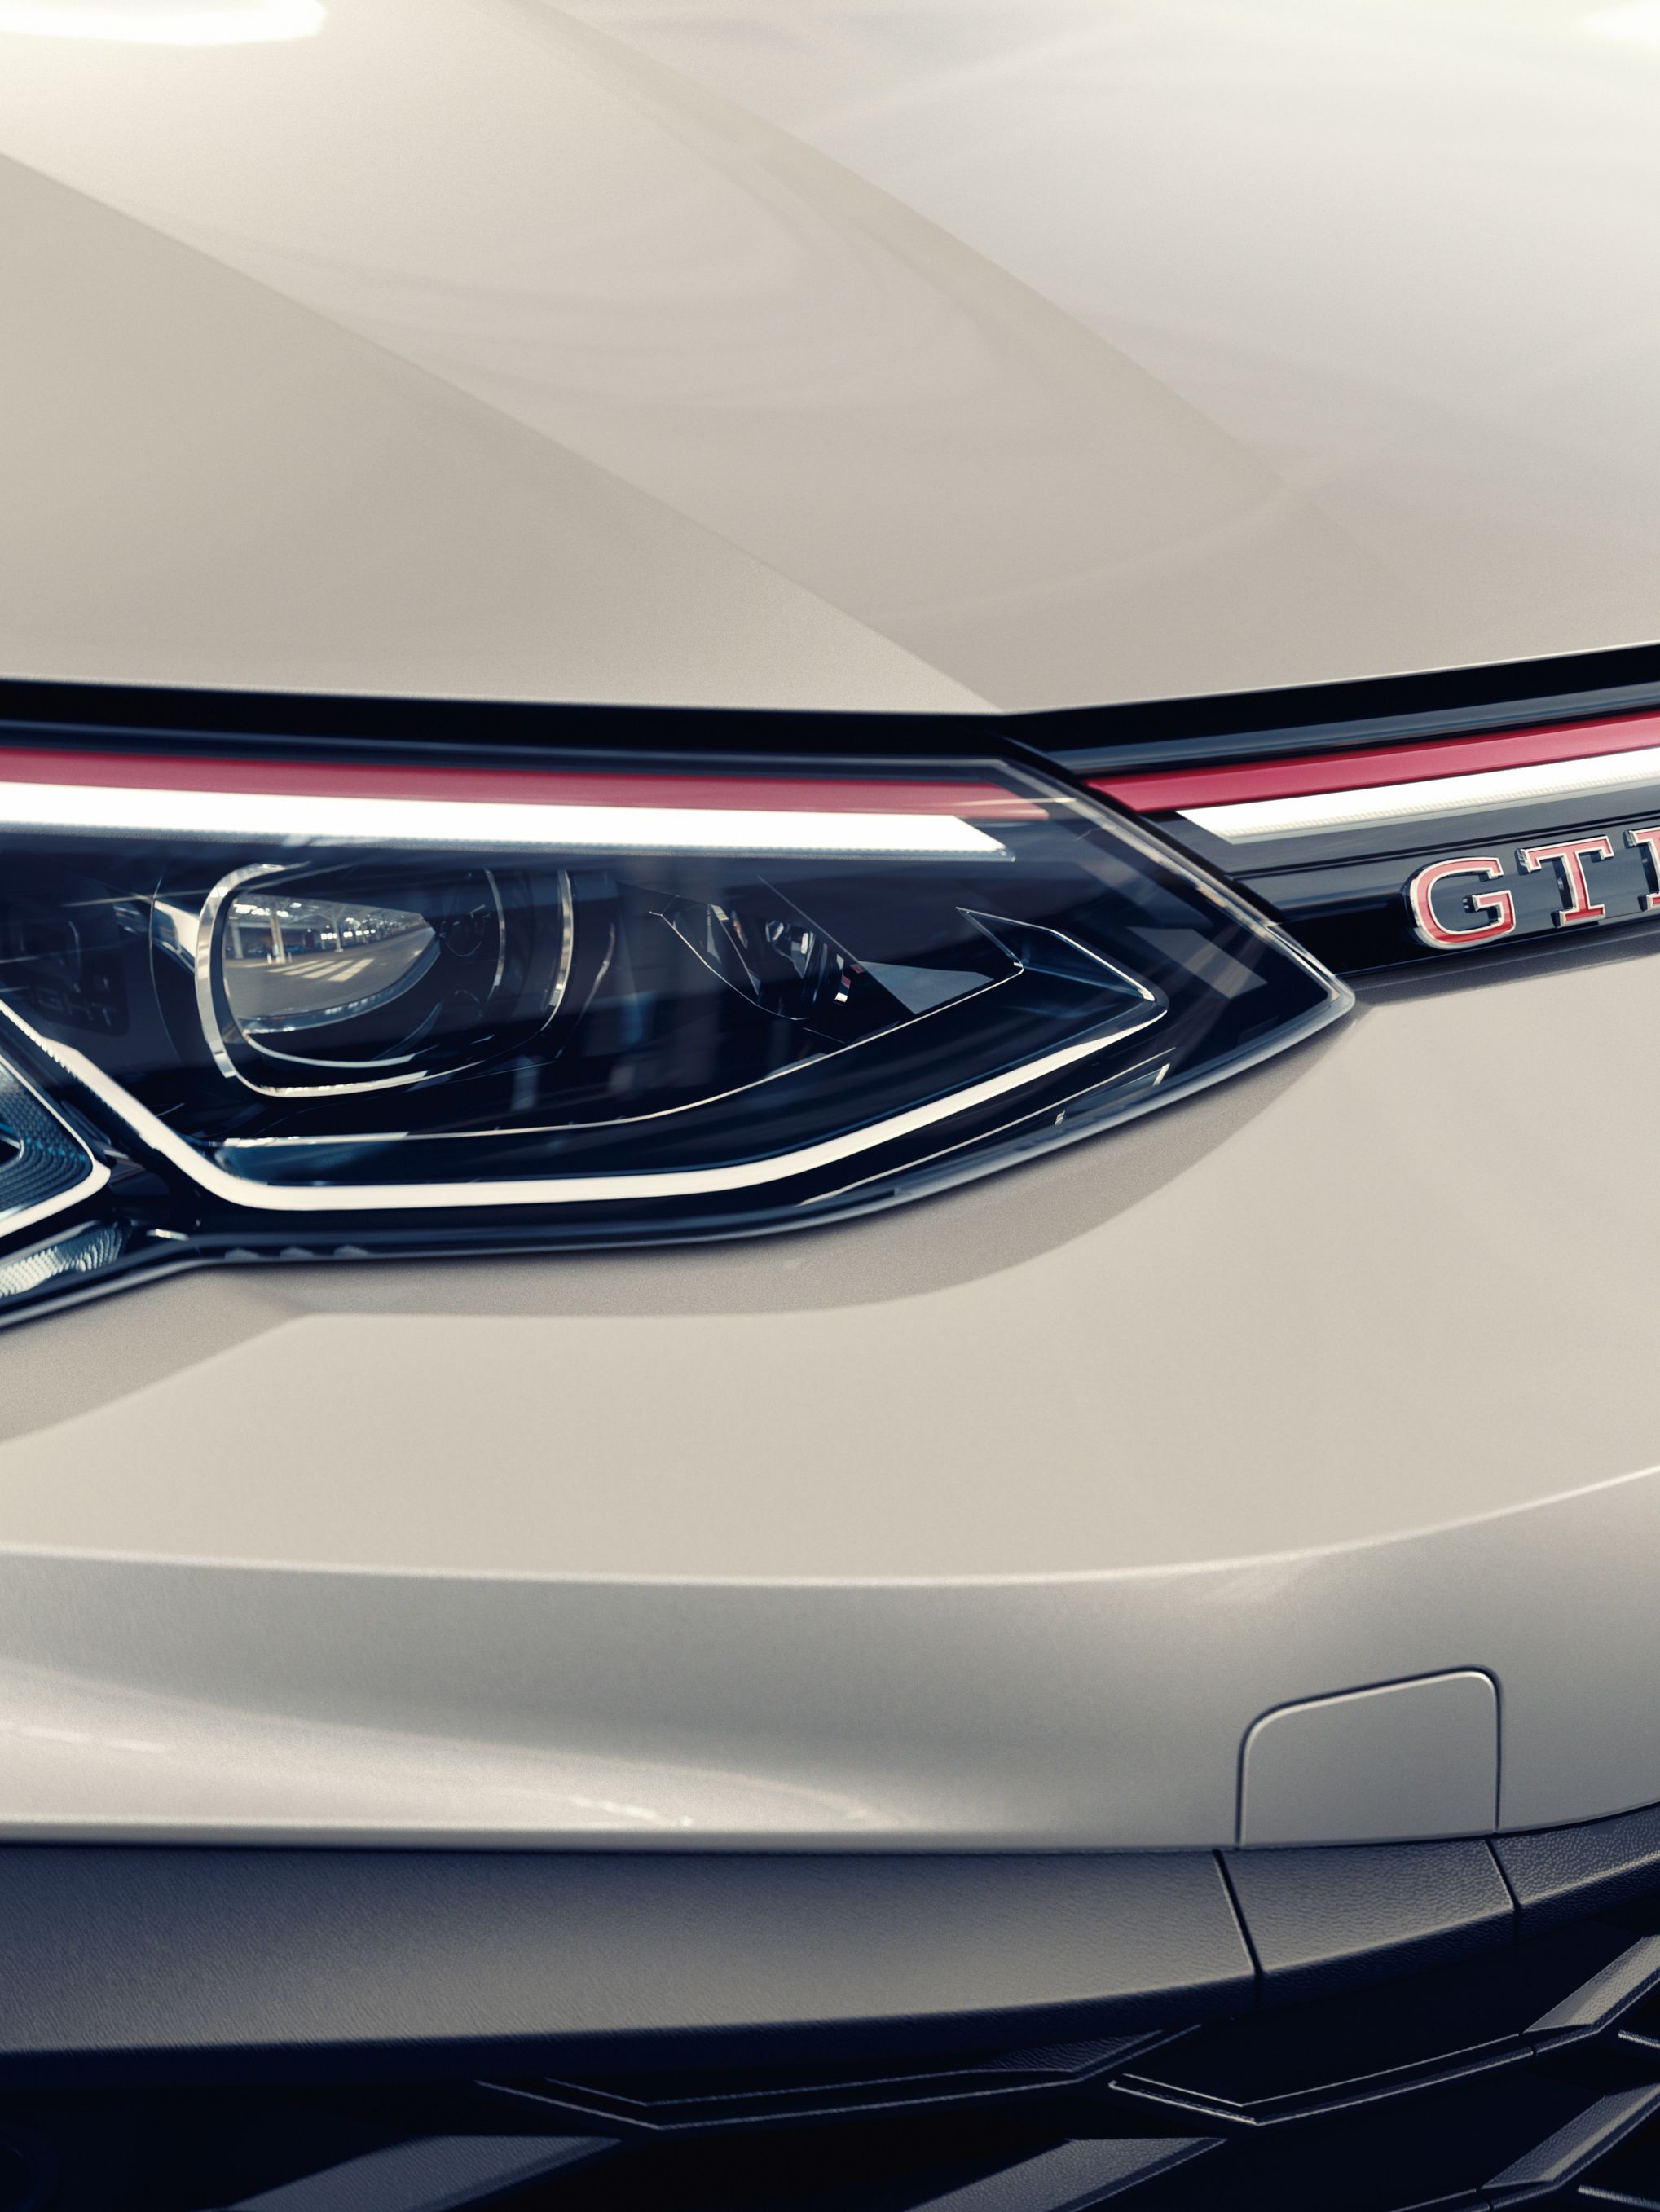 Detailansicht vom LED-Scheinwerfer des VW Golf GTI Clubsport